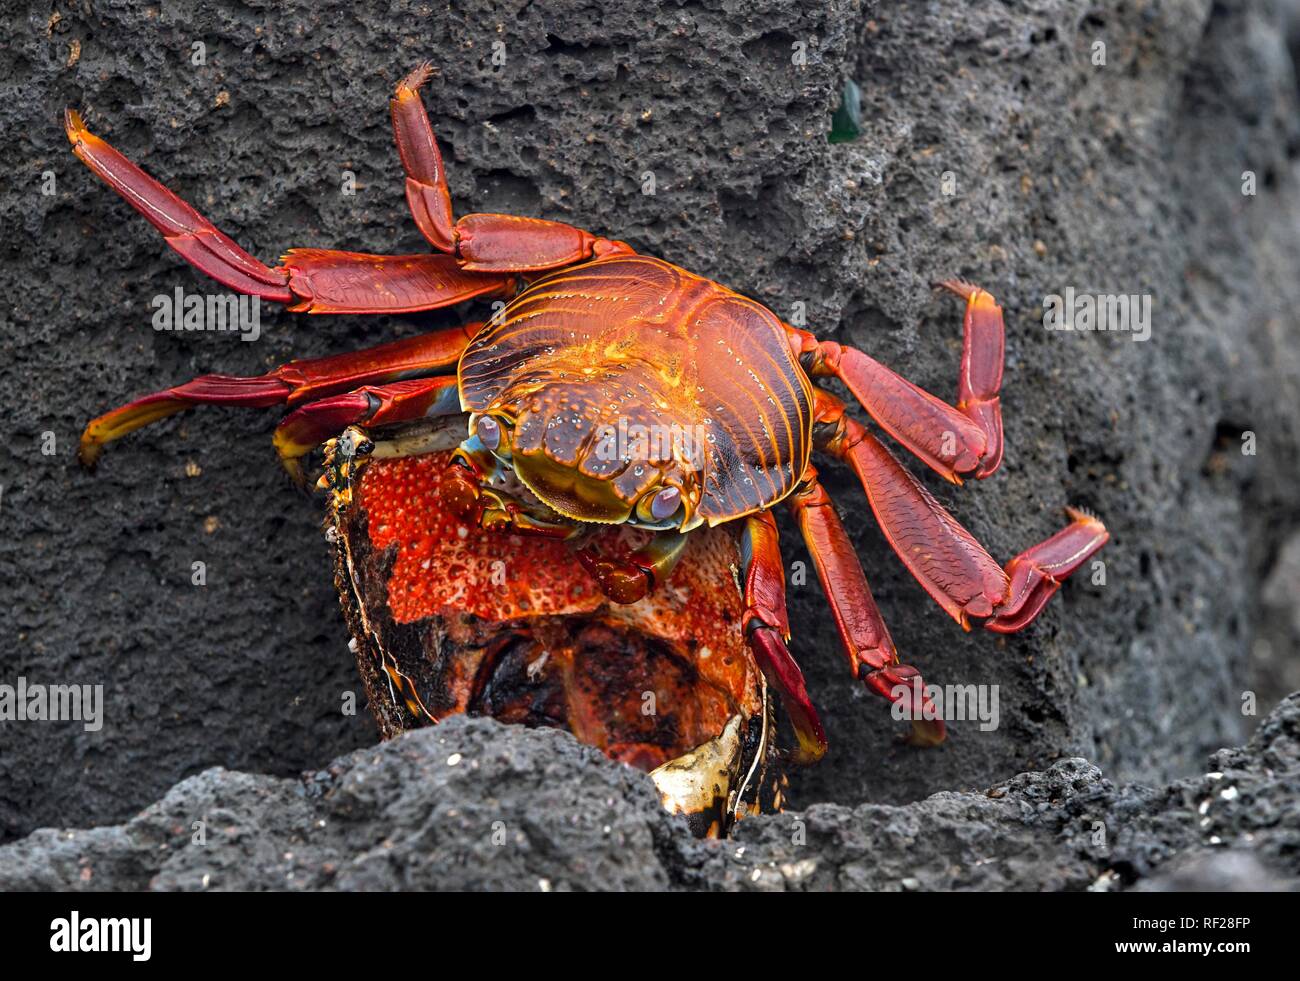 Le red rock crab (Grapsus grapsus) alimente un homard, de l'Île